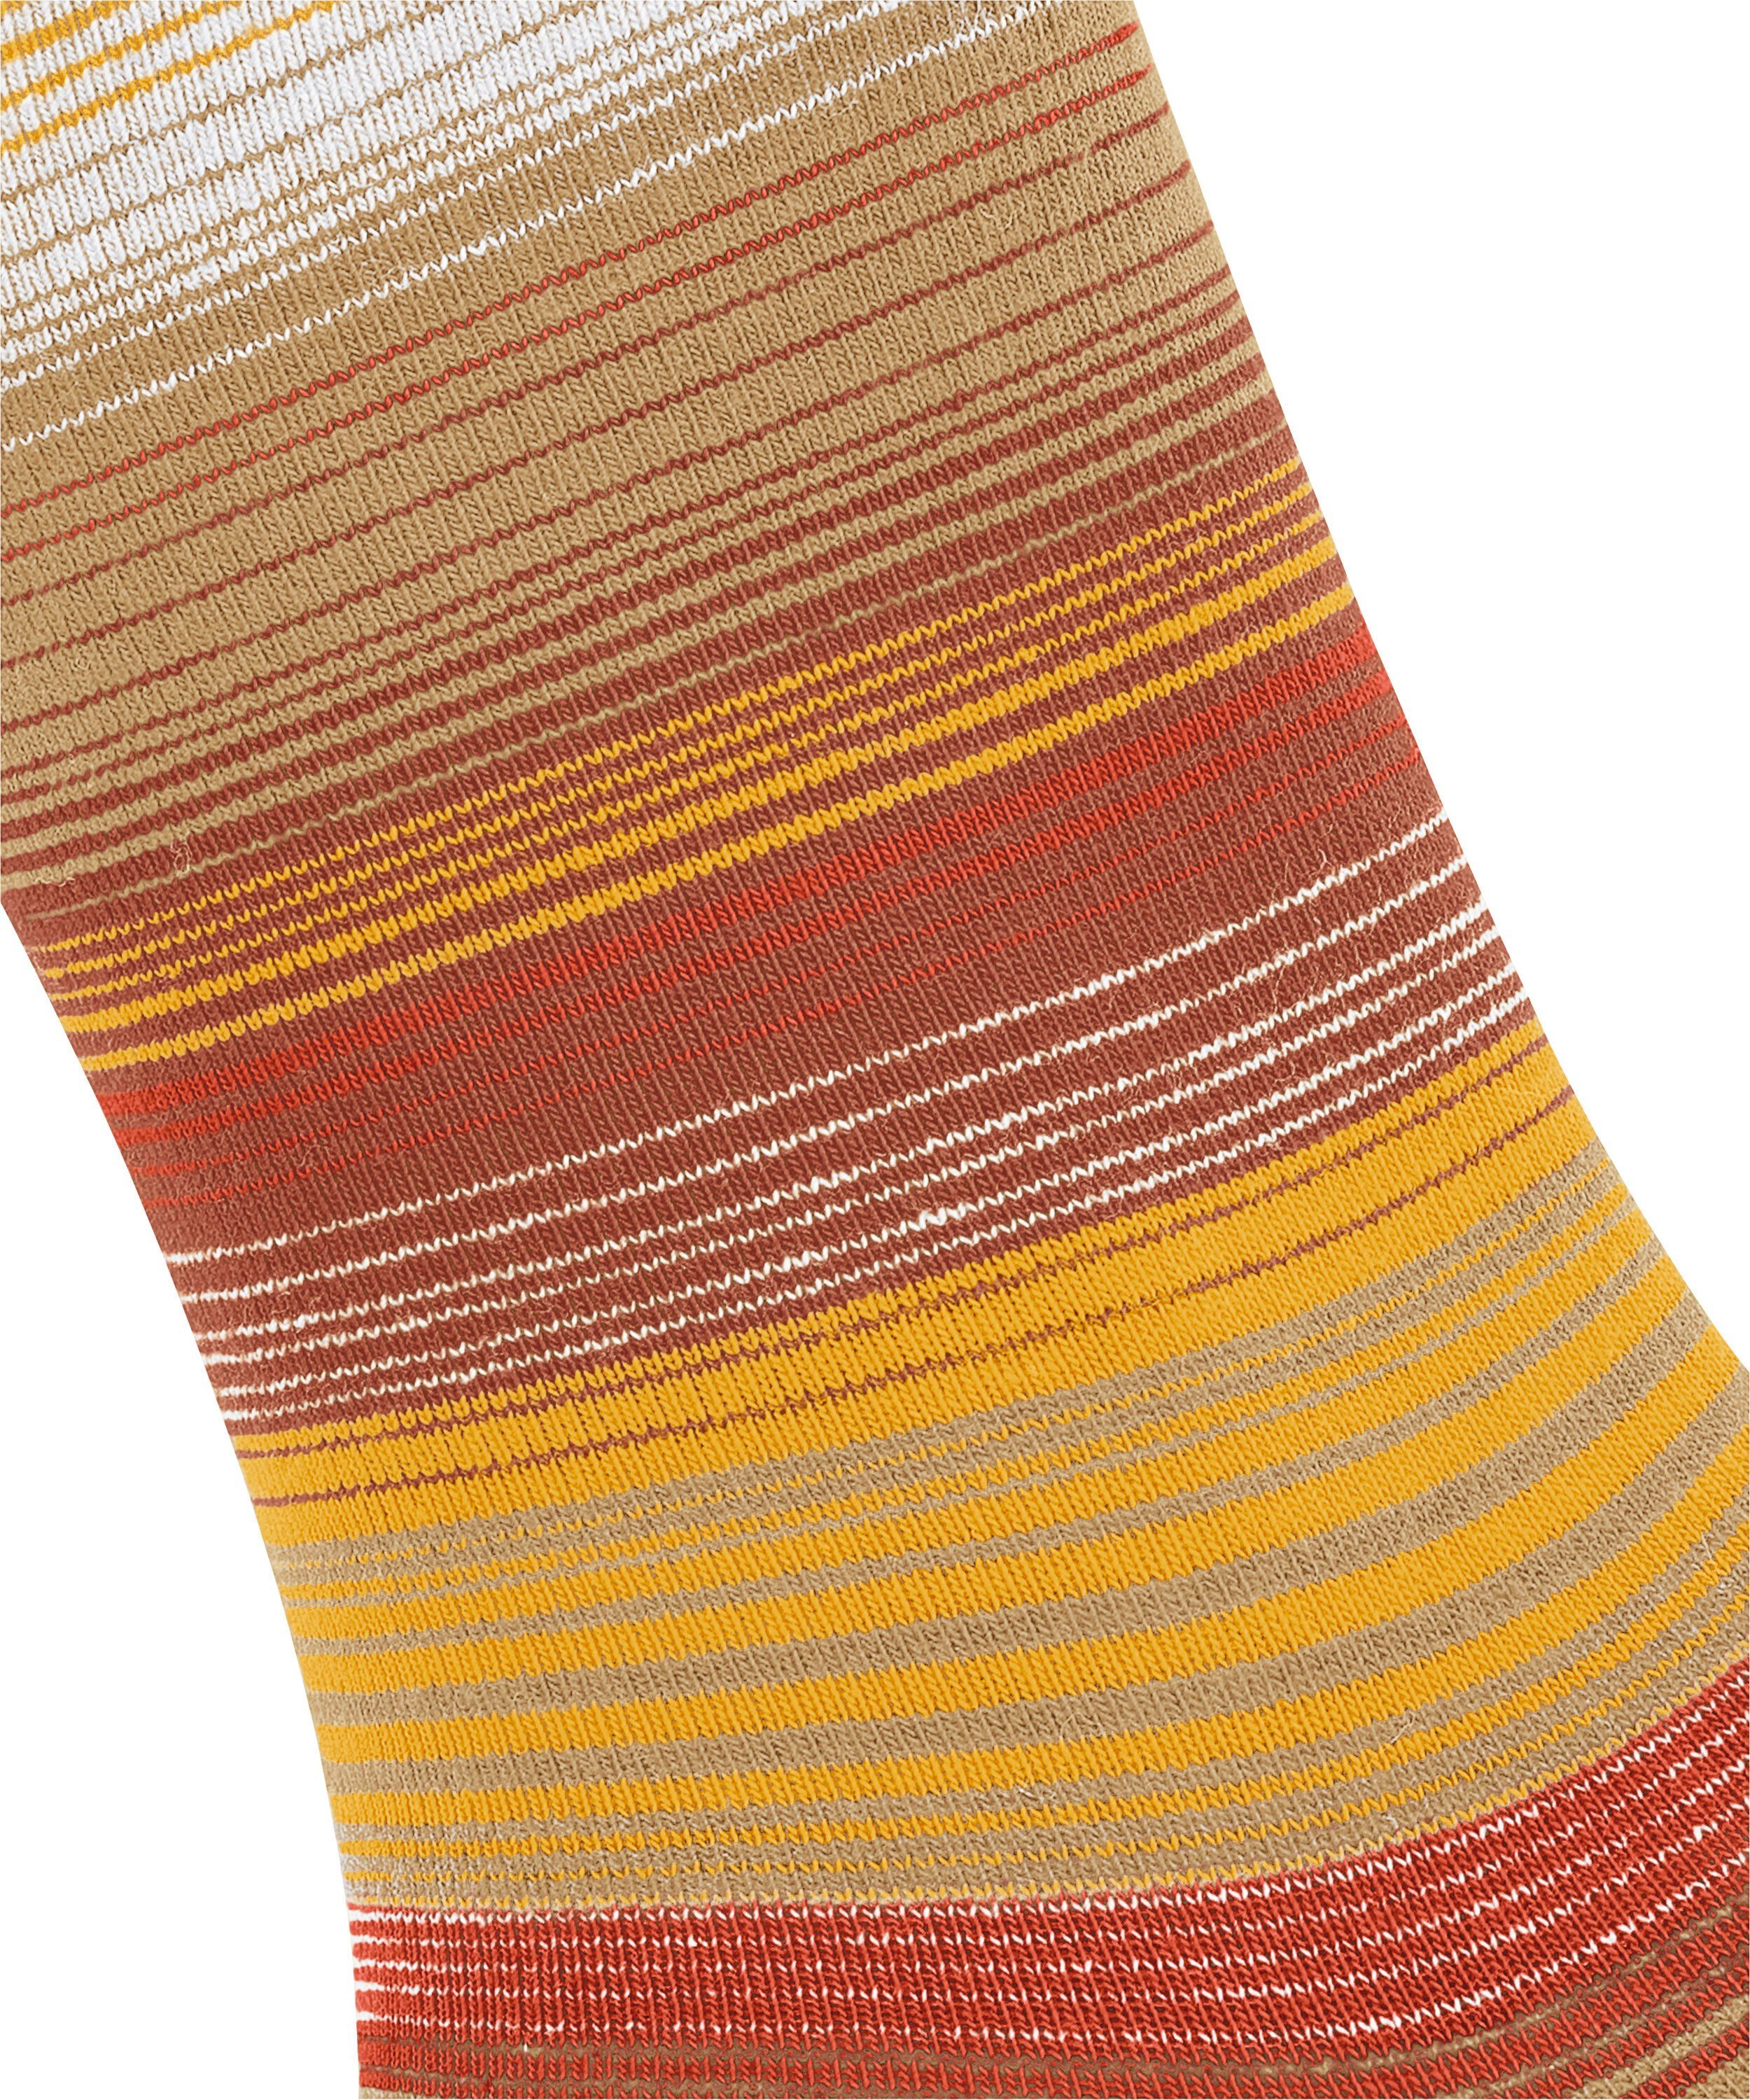 toffee Stripe Socken (4670) (1-Paar) Burlington